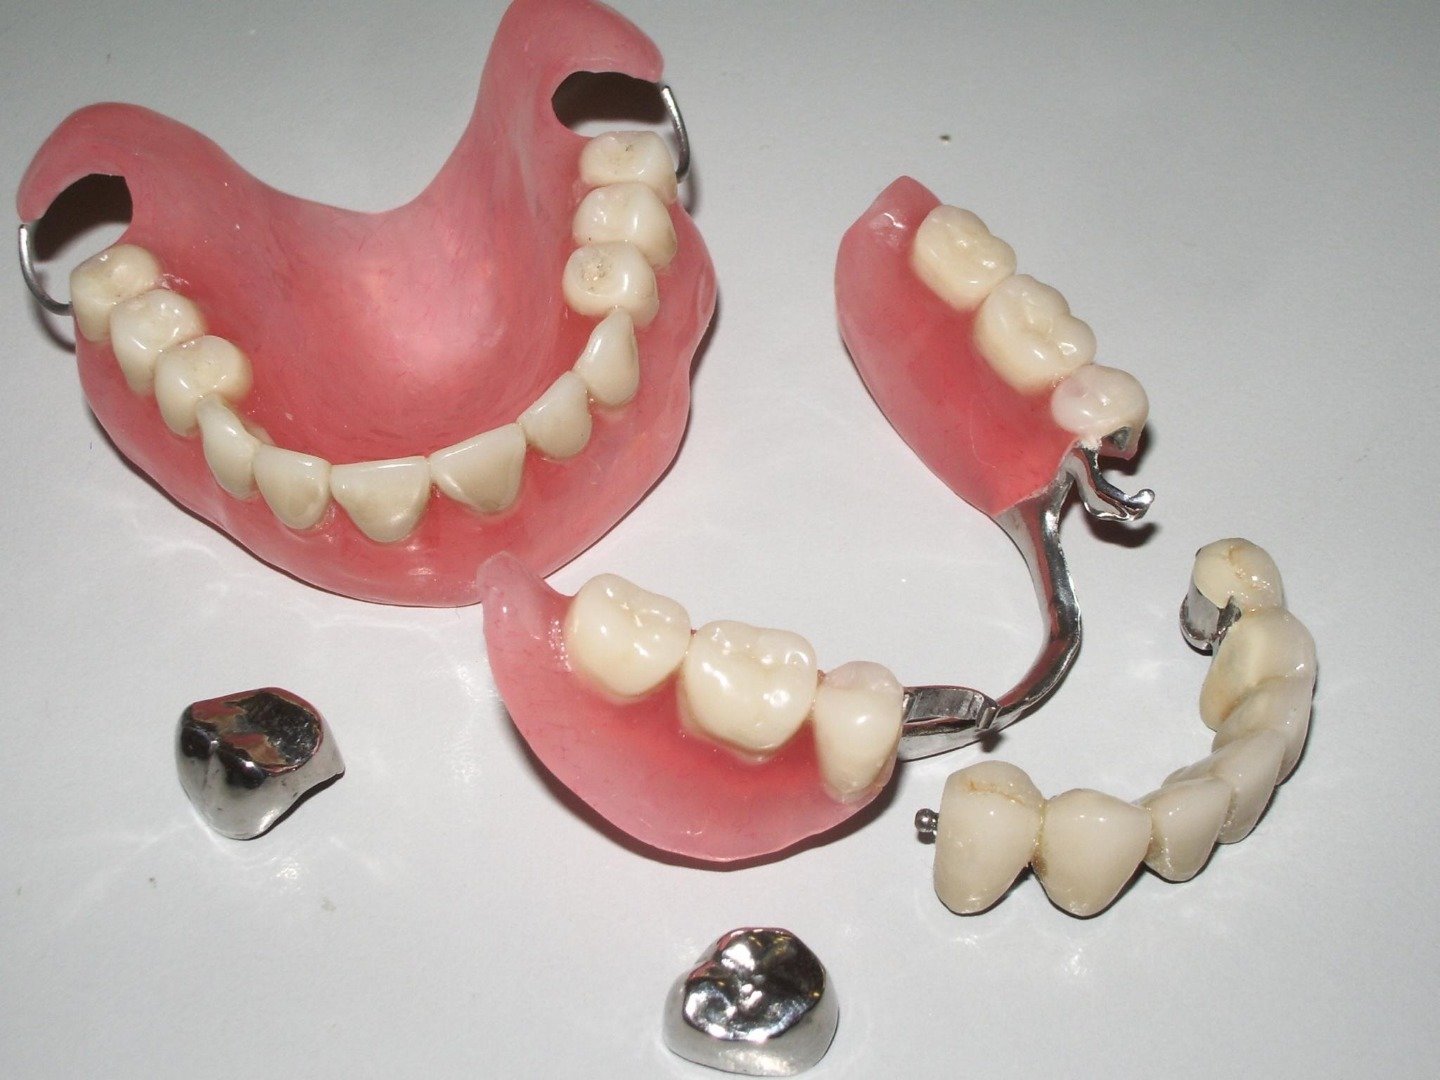 Зубные бюгельные протезы – отзывы, цена на протезирование, фото